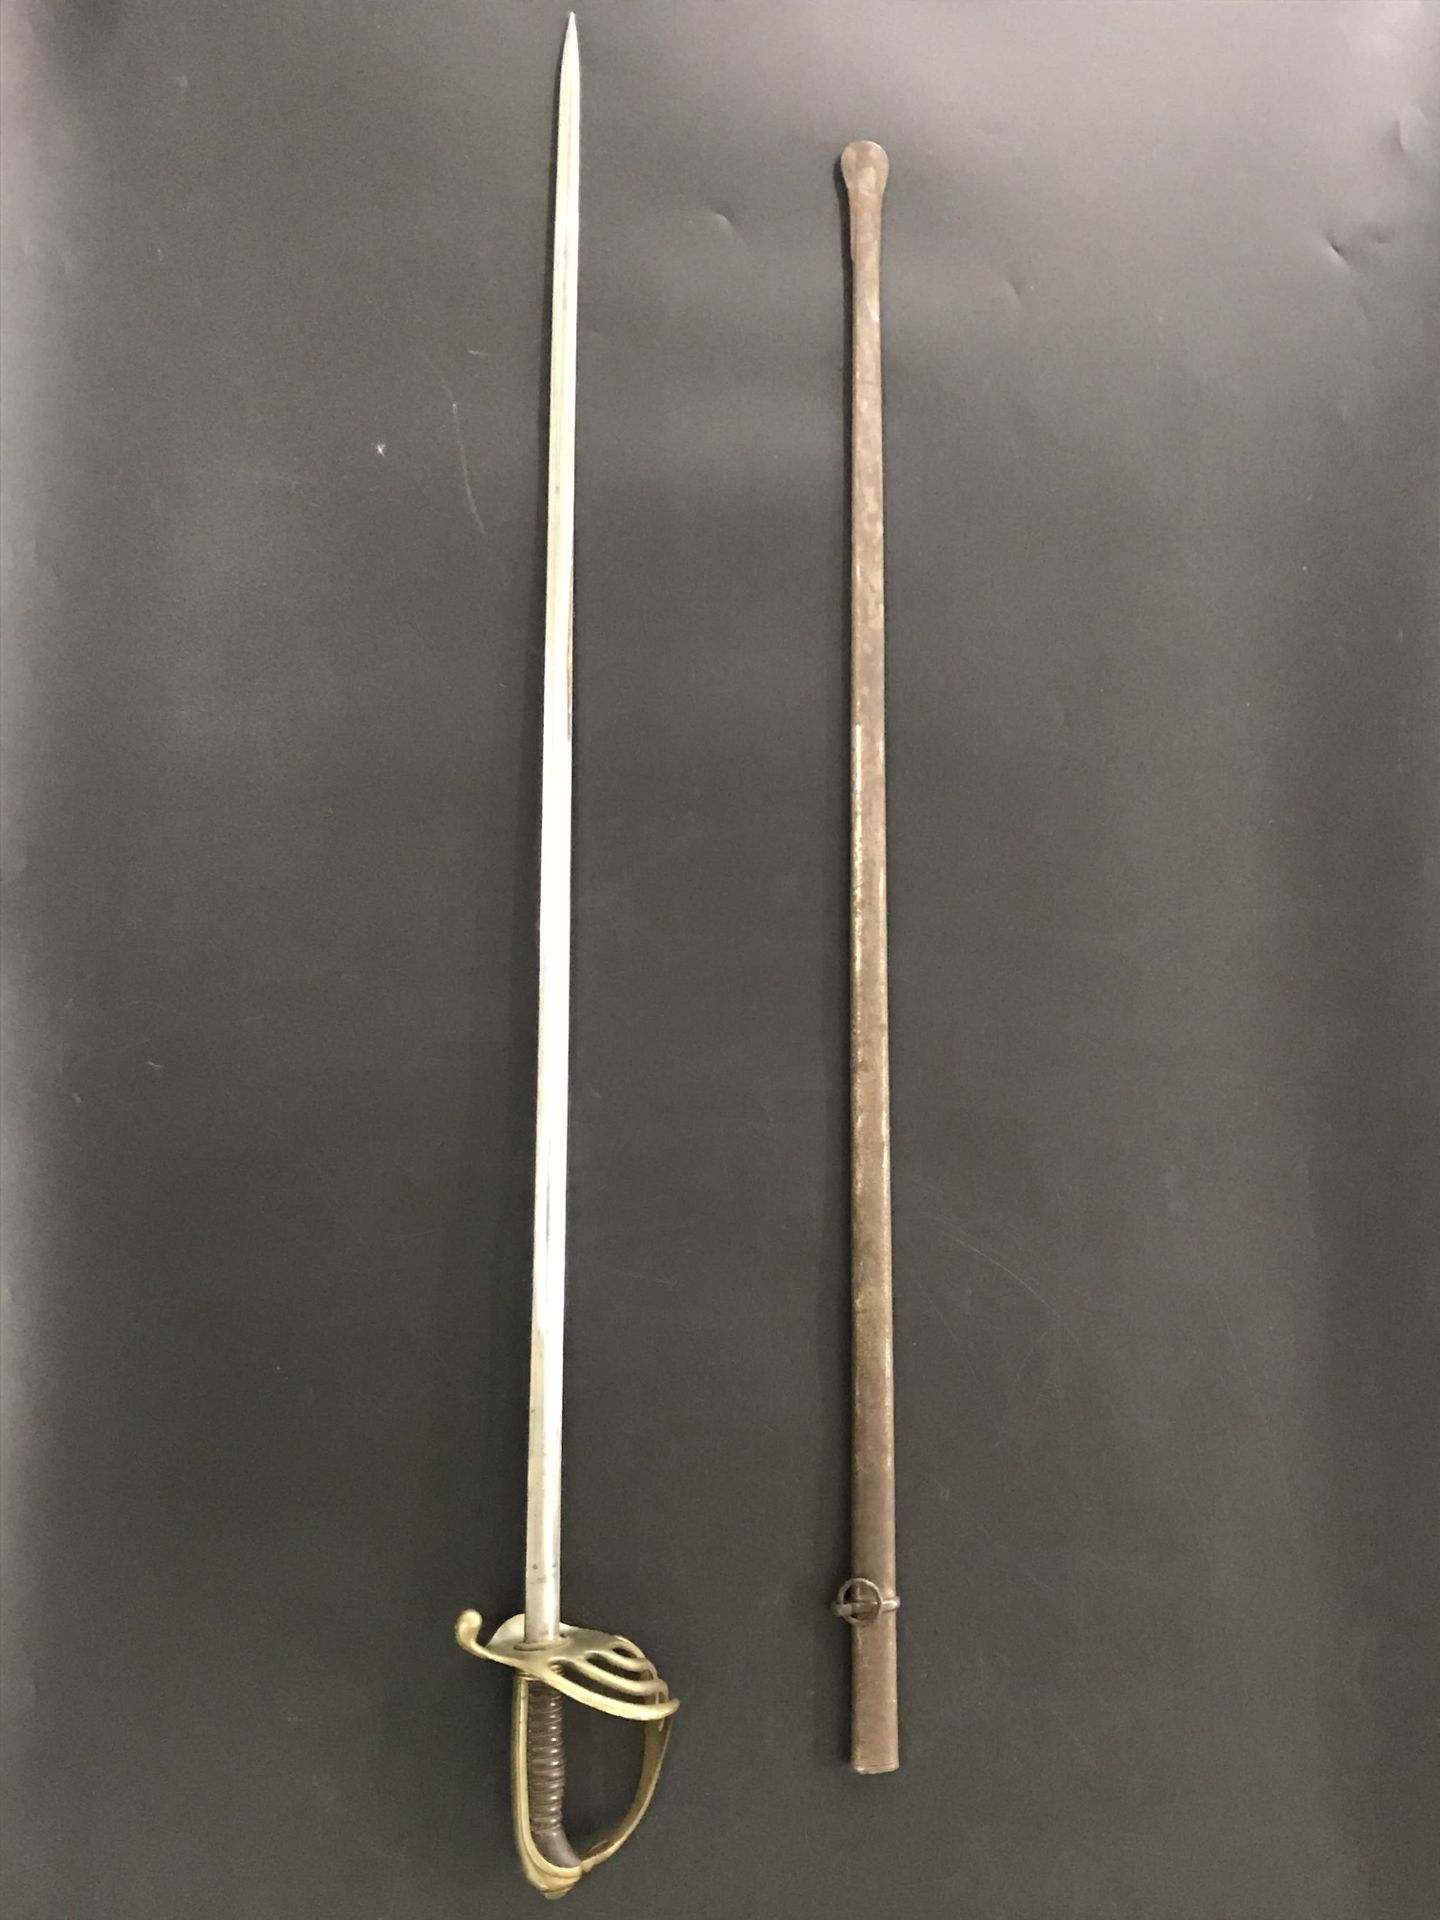 Null 步兵军官的马刀

1882型

喇叭把手（小事故）。

缺少水印

缝制的刀鞘。

标有Coulaux Frères的刀片